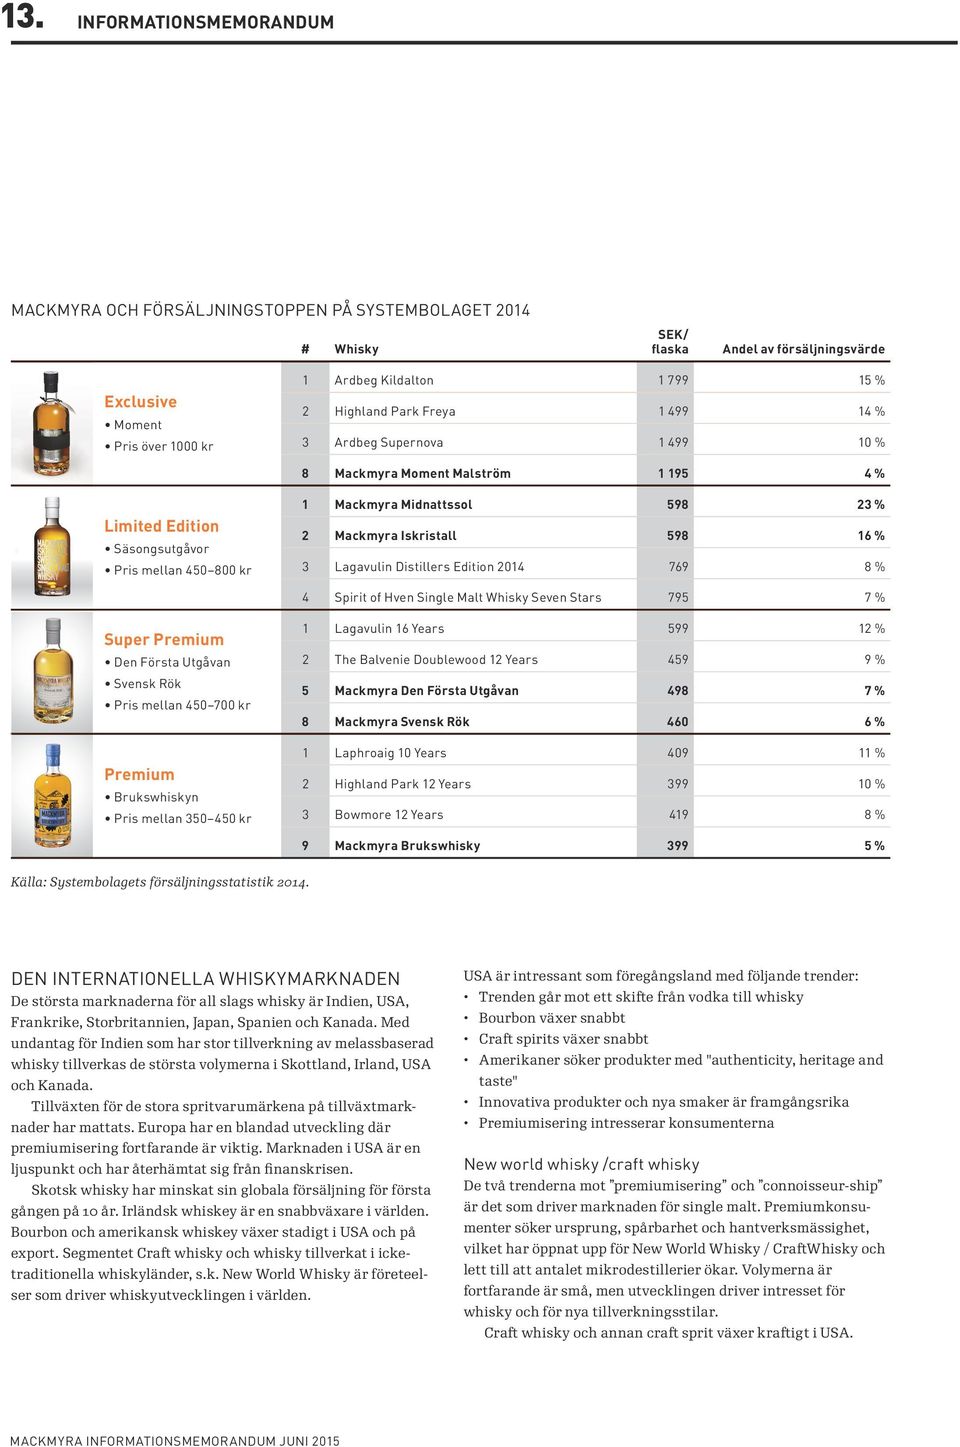 Iskristall 598 16 % 3 Lagavulin Distillers Edition 2014 769 8 % 4 Spirit of Hven Single Malt Whisky Seven Stars 795 7 % Super Premium Den Första Utgåvan Svensk Rök Pris mellan 450 700 kr Premium